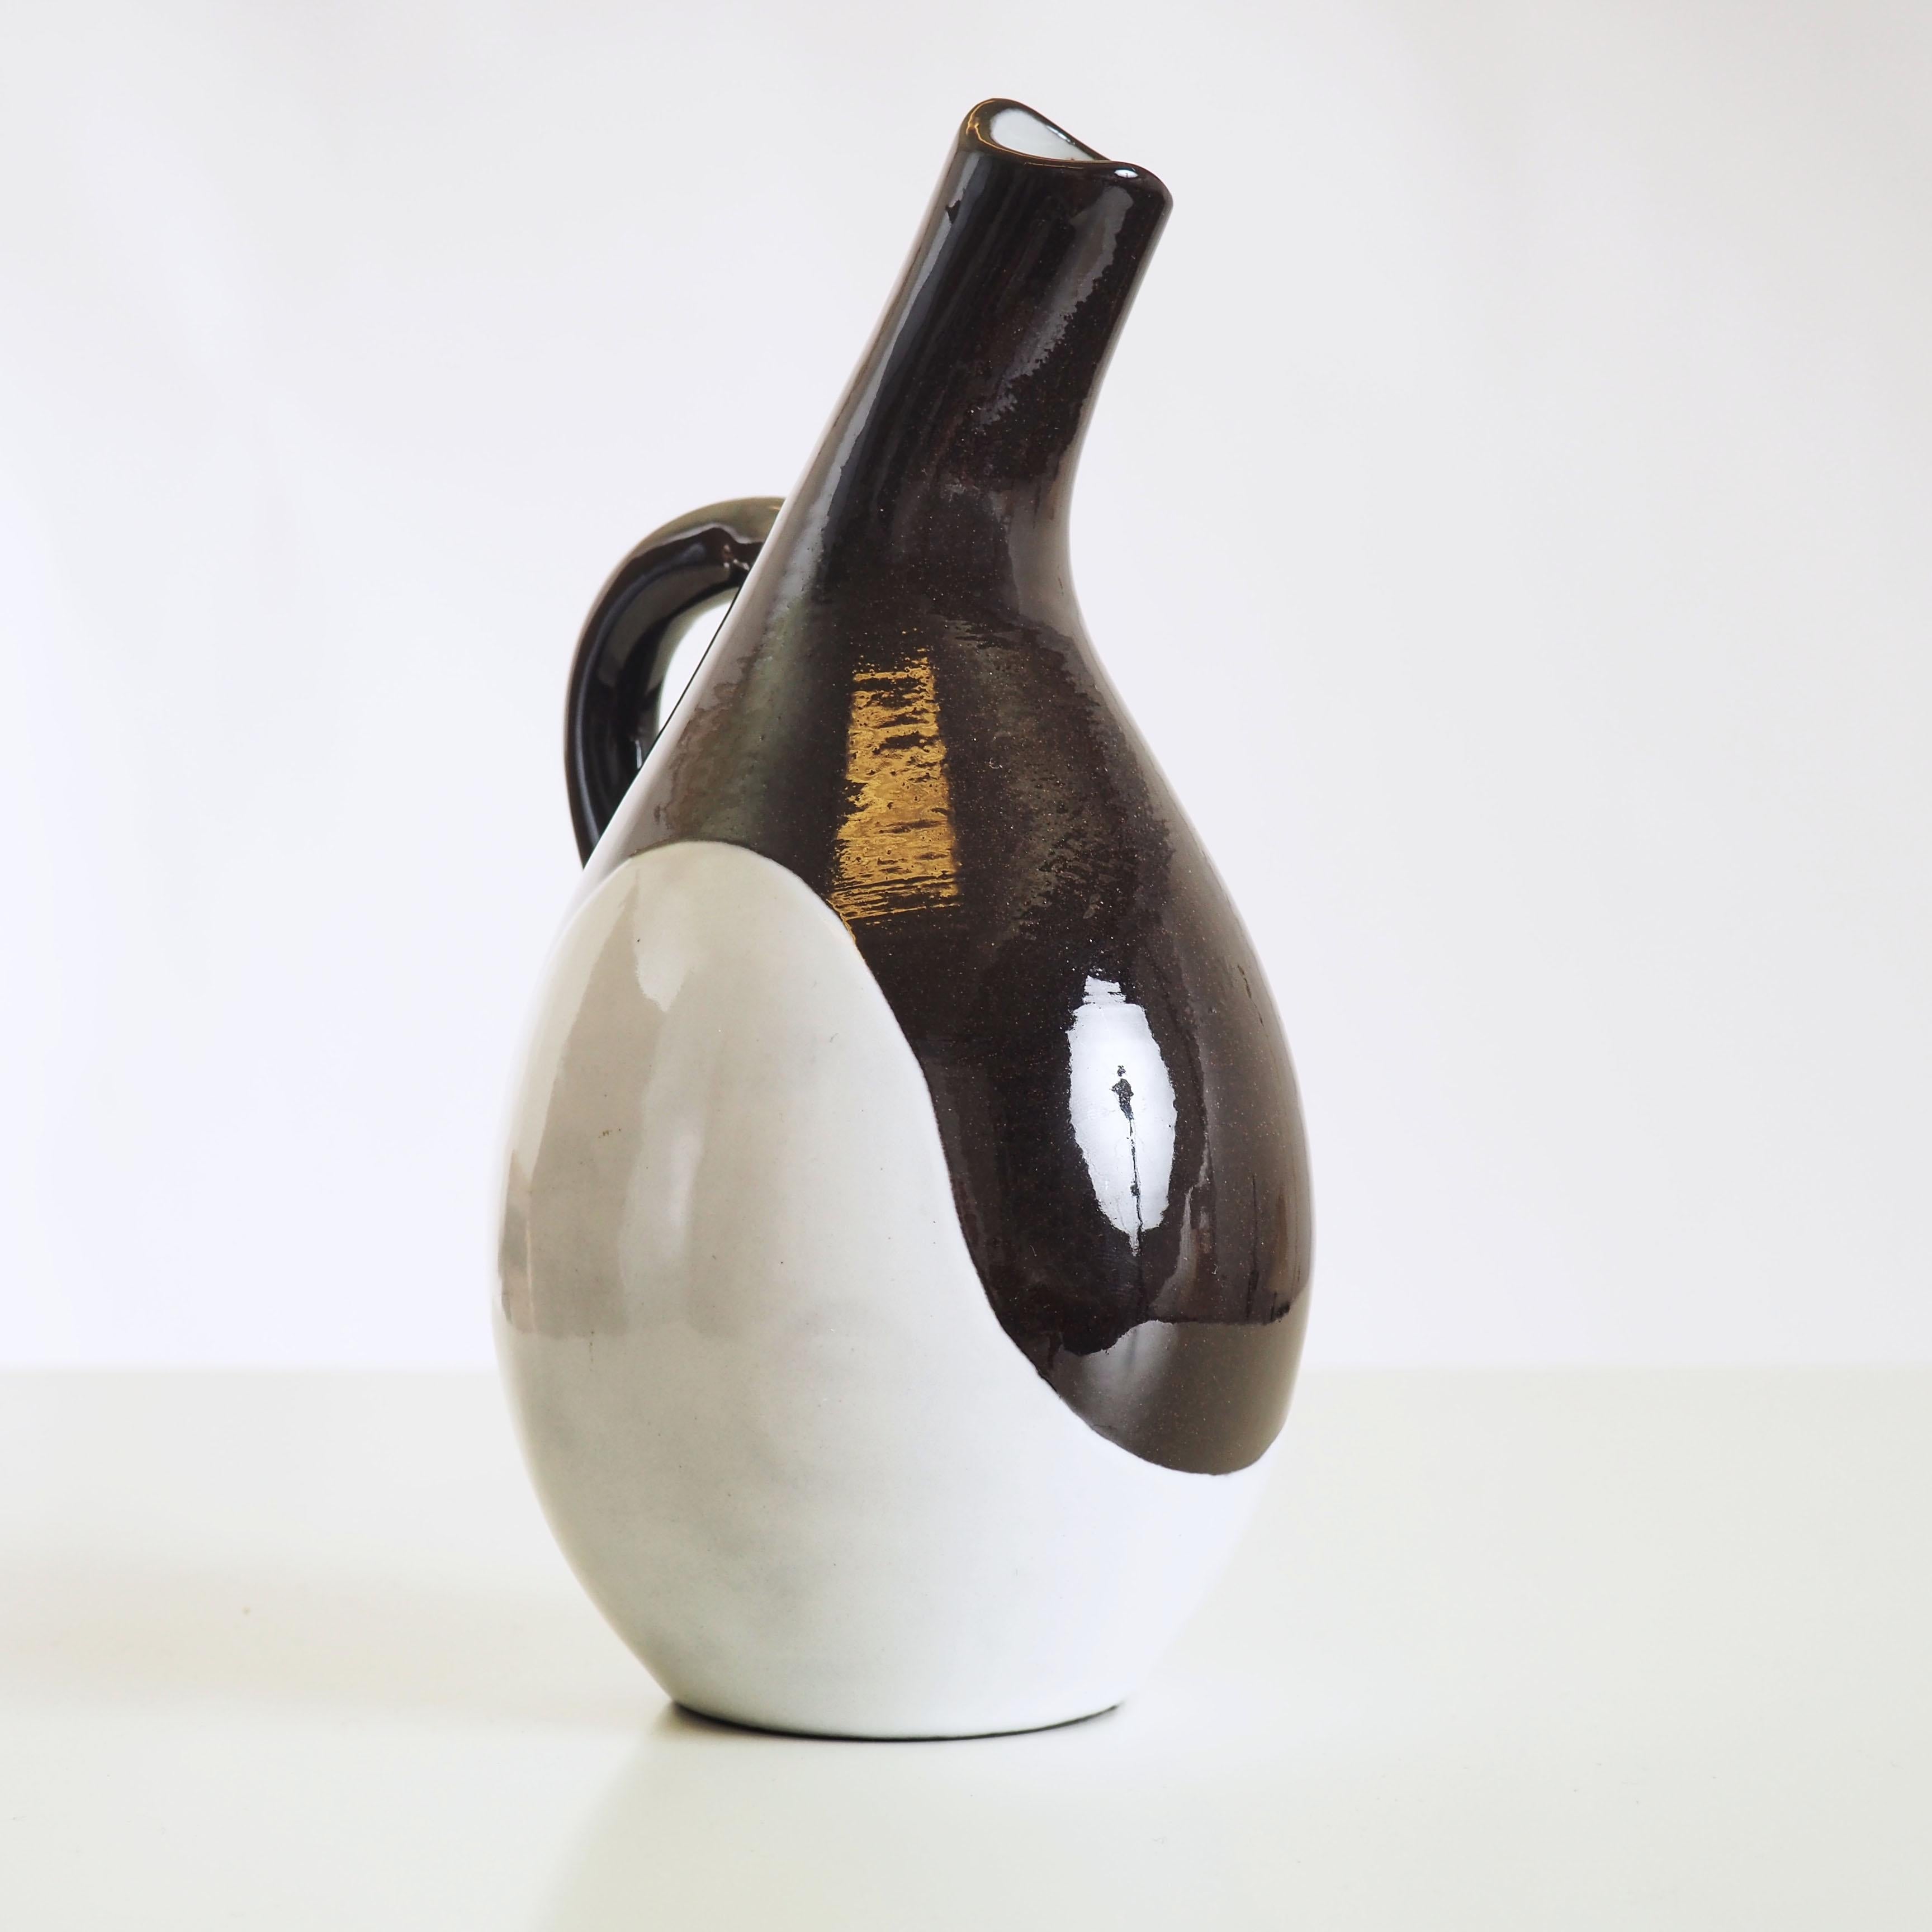 Vase réalisé en 1954 par le designer suédois Hjördis Oldfors. Décor typique de la Suède des années 1950.